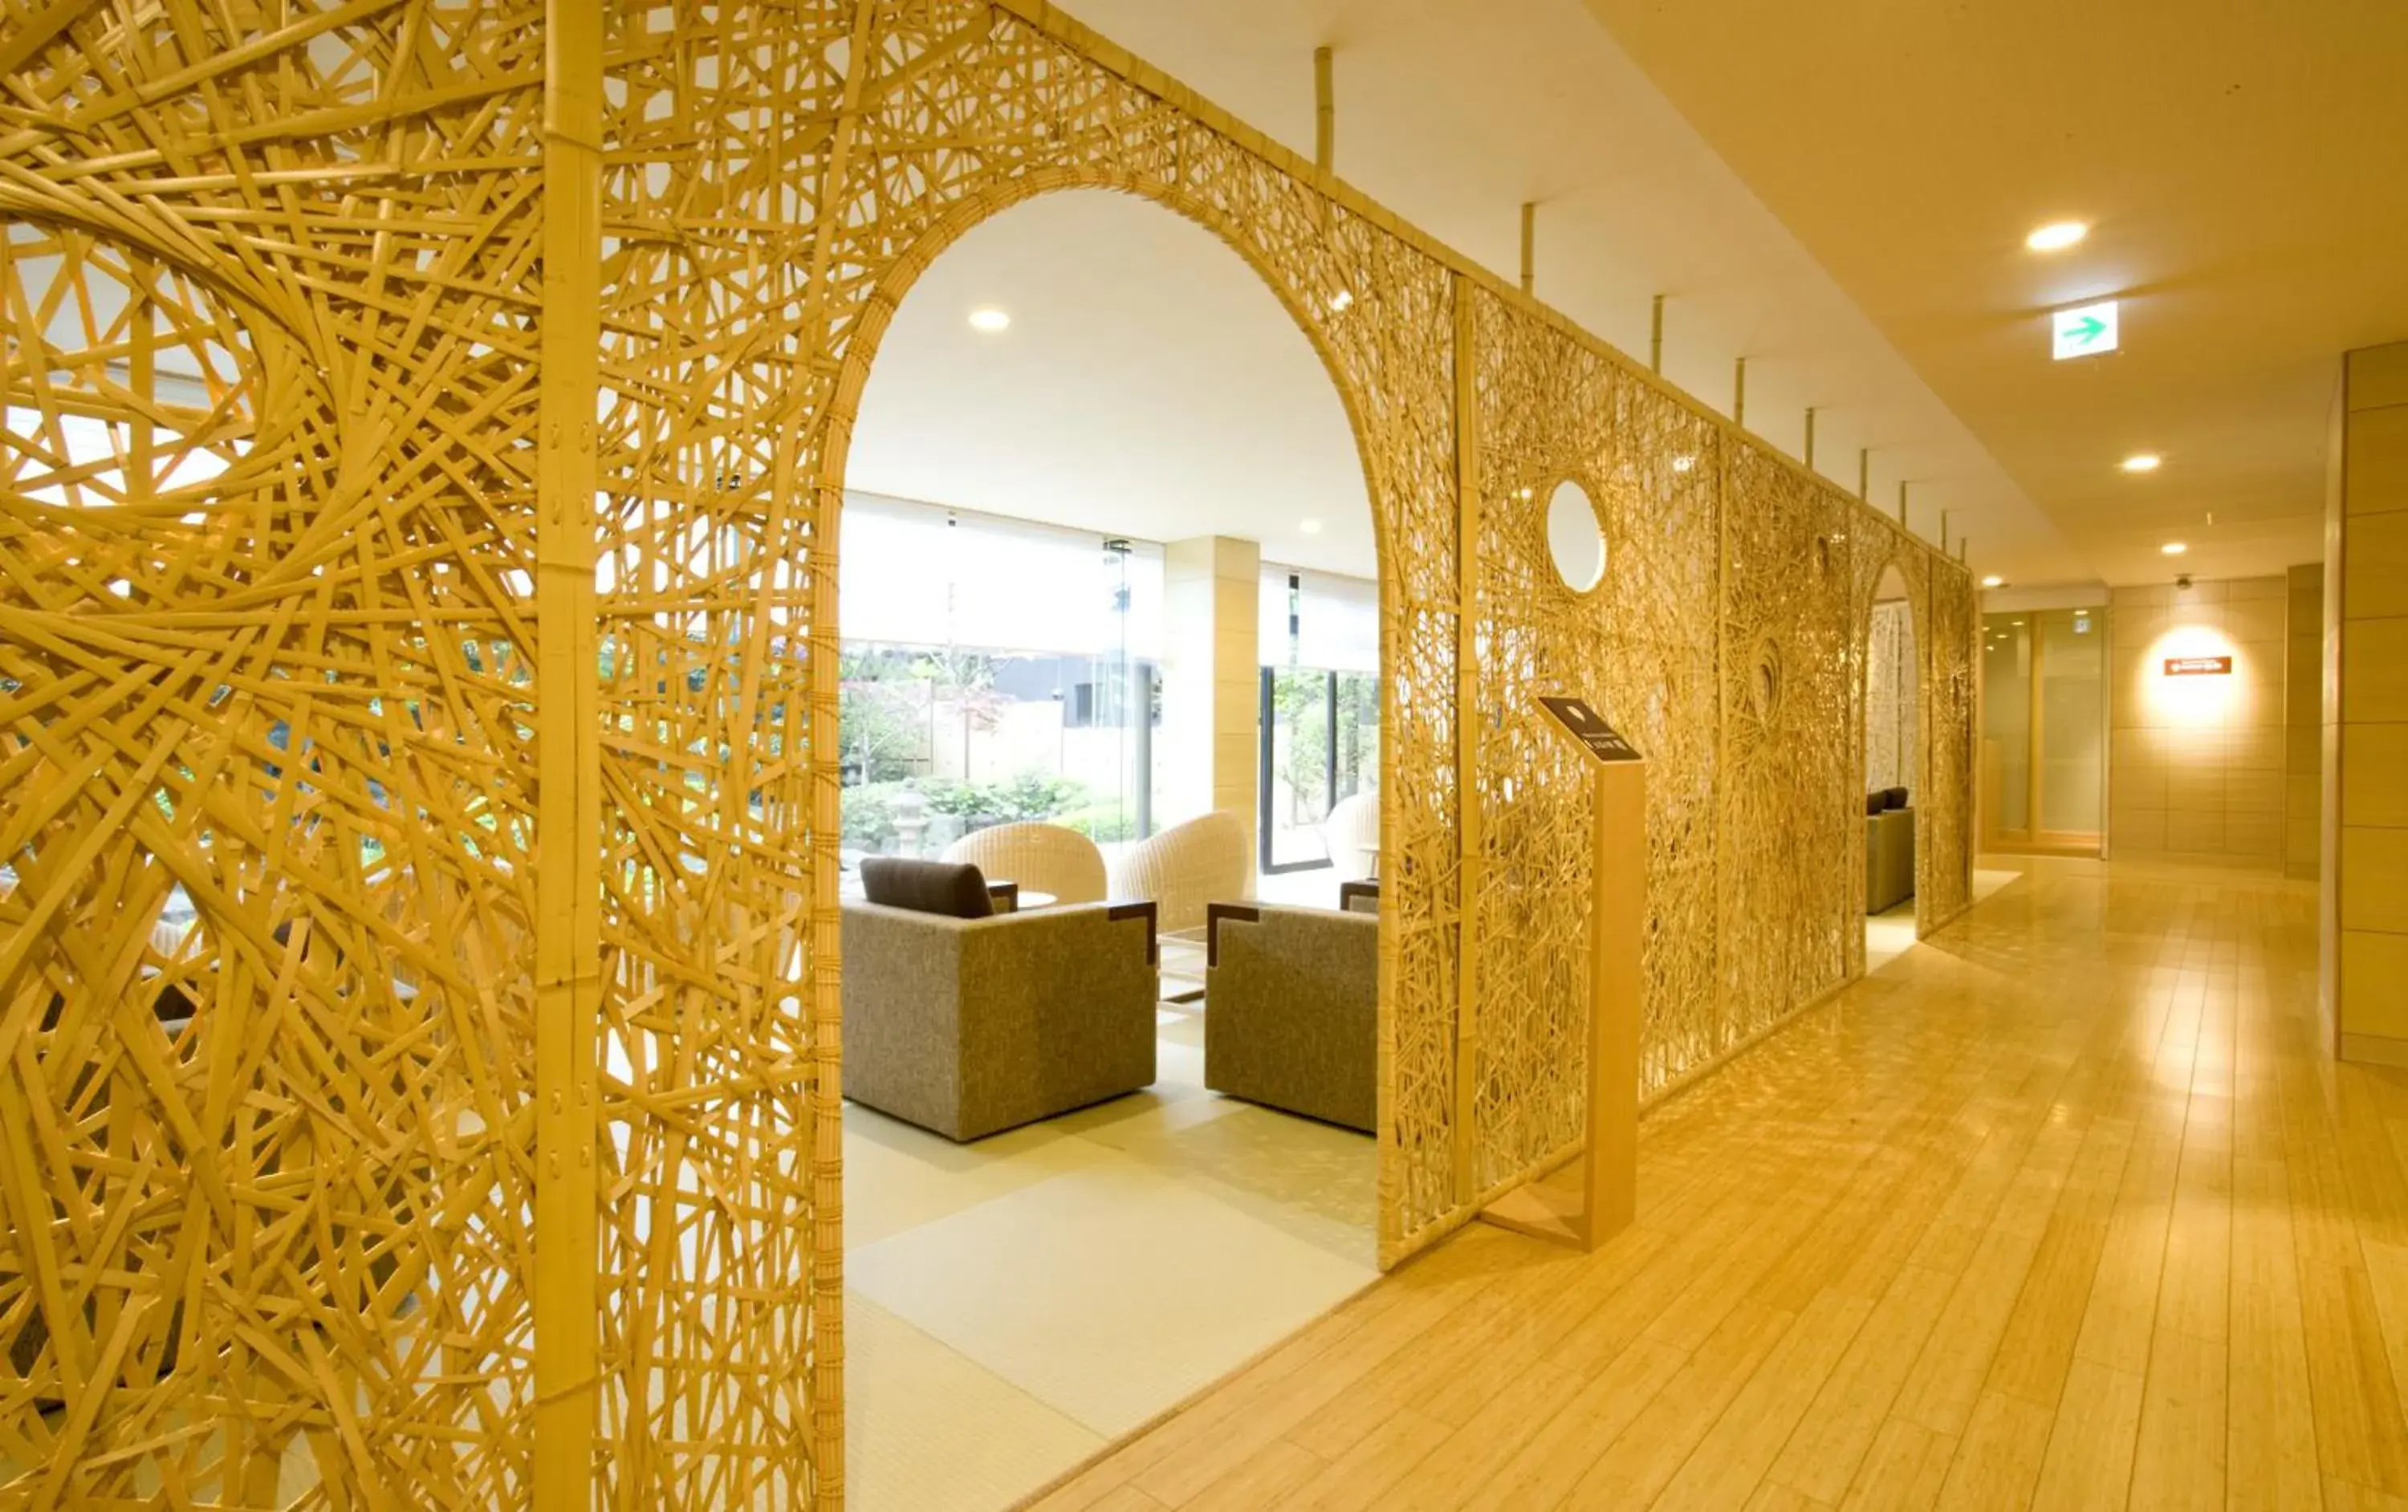 Lobby or reception, Lobby/Reception in Hana Beppu